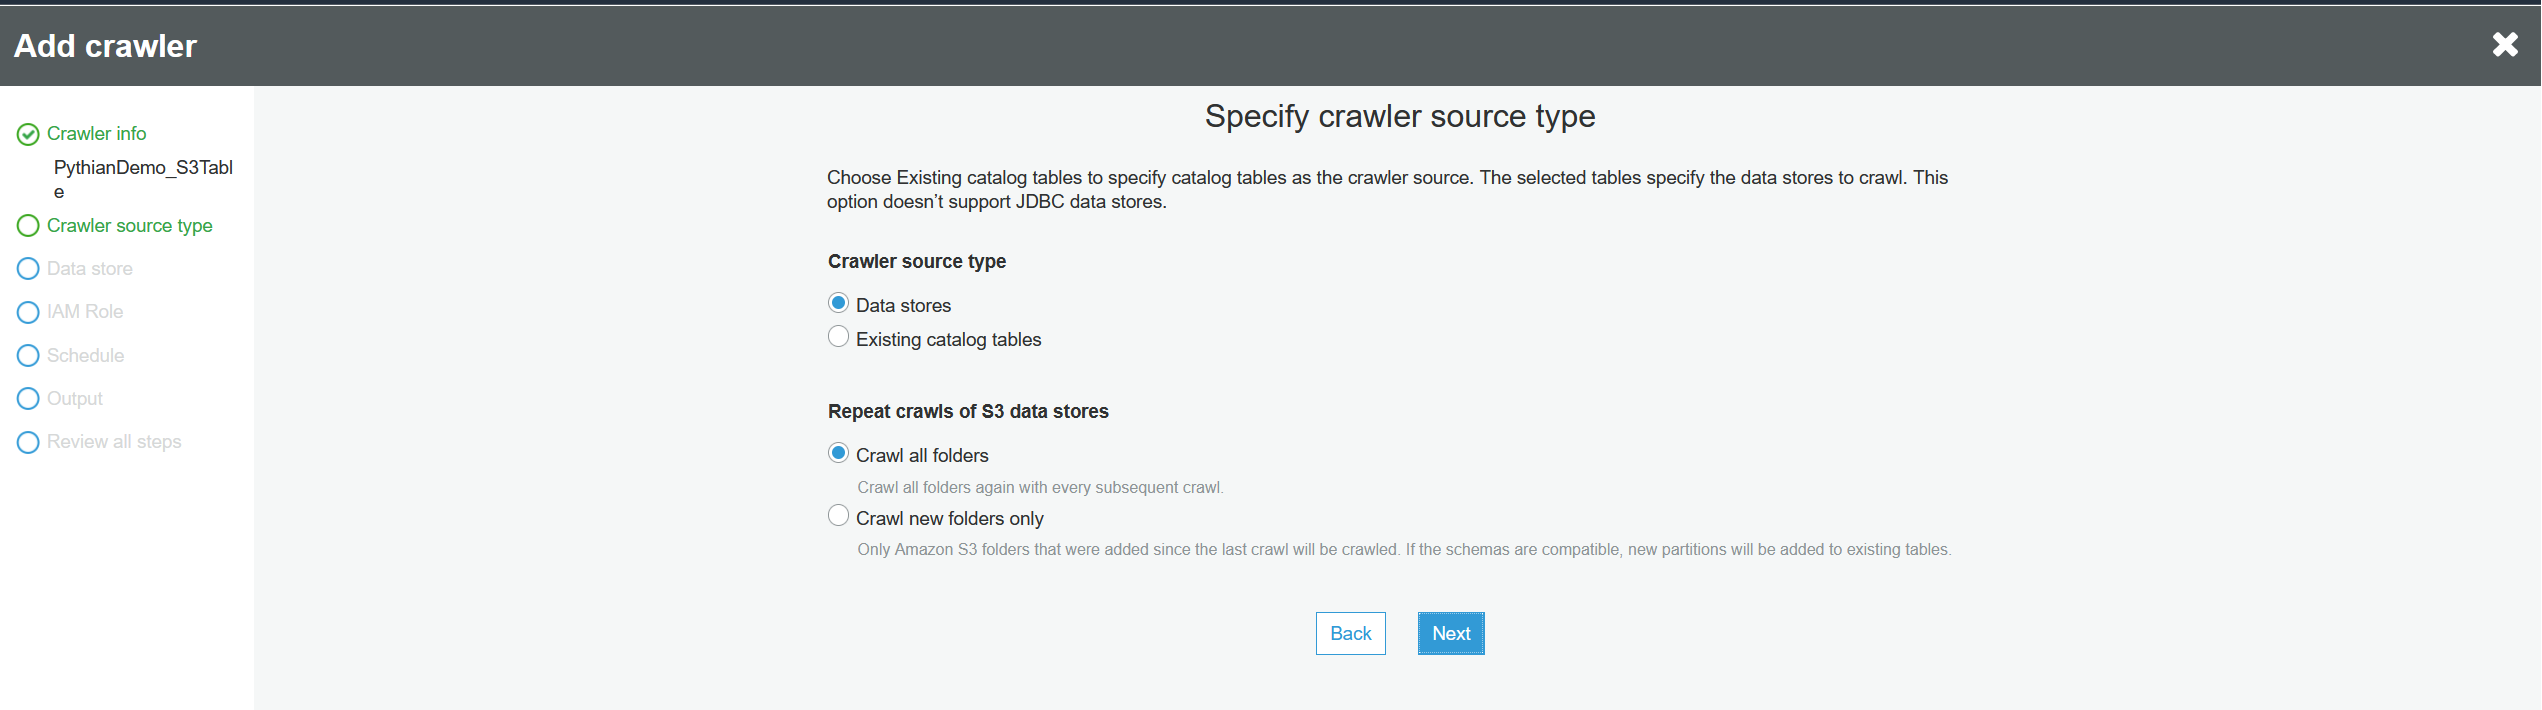 Crawler source type.